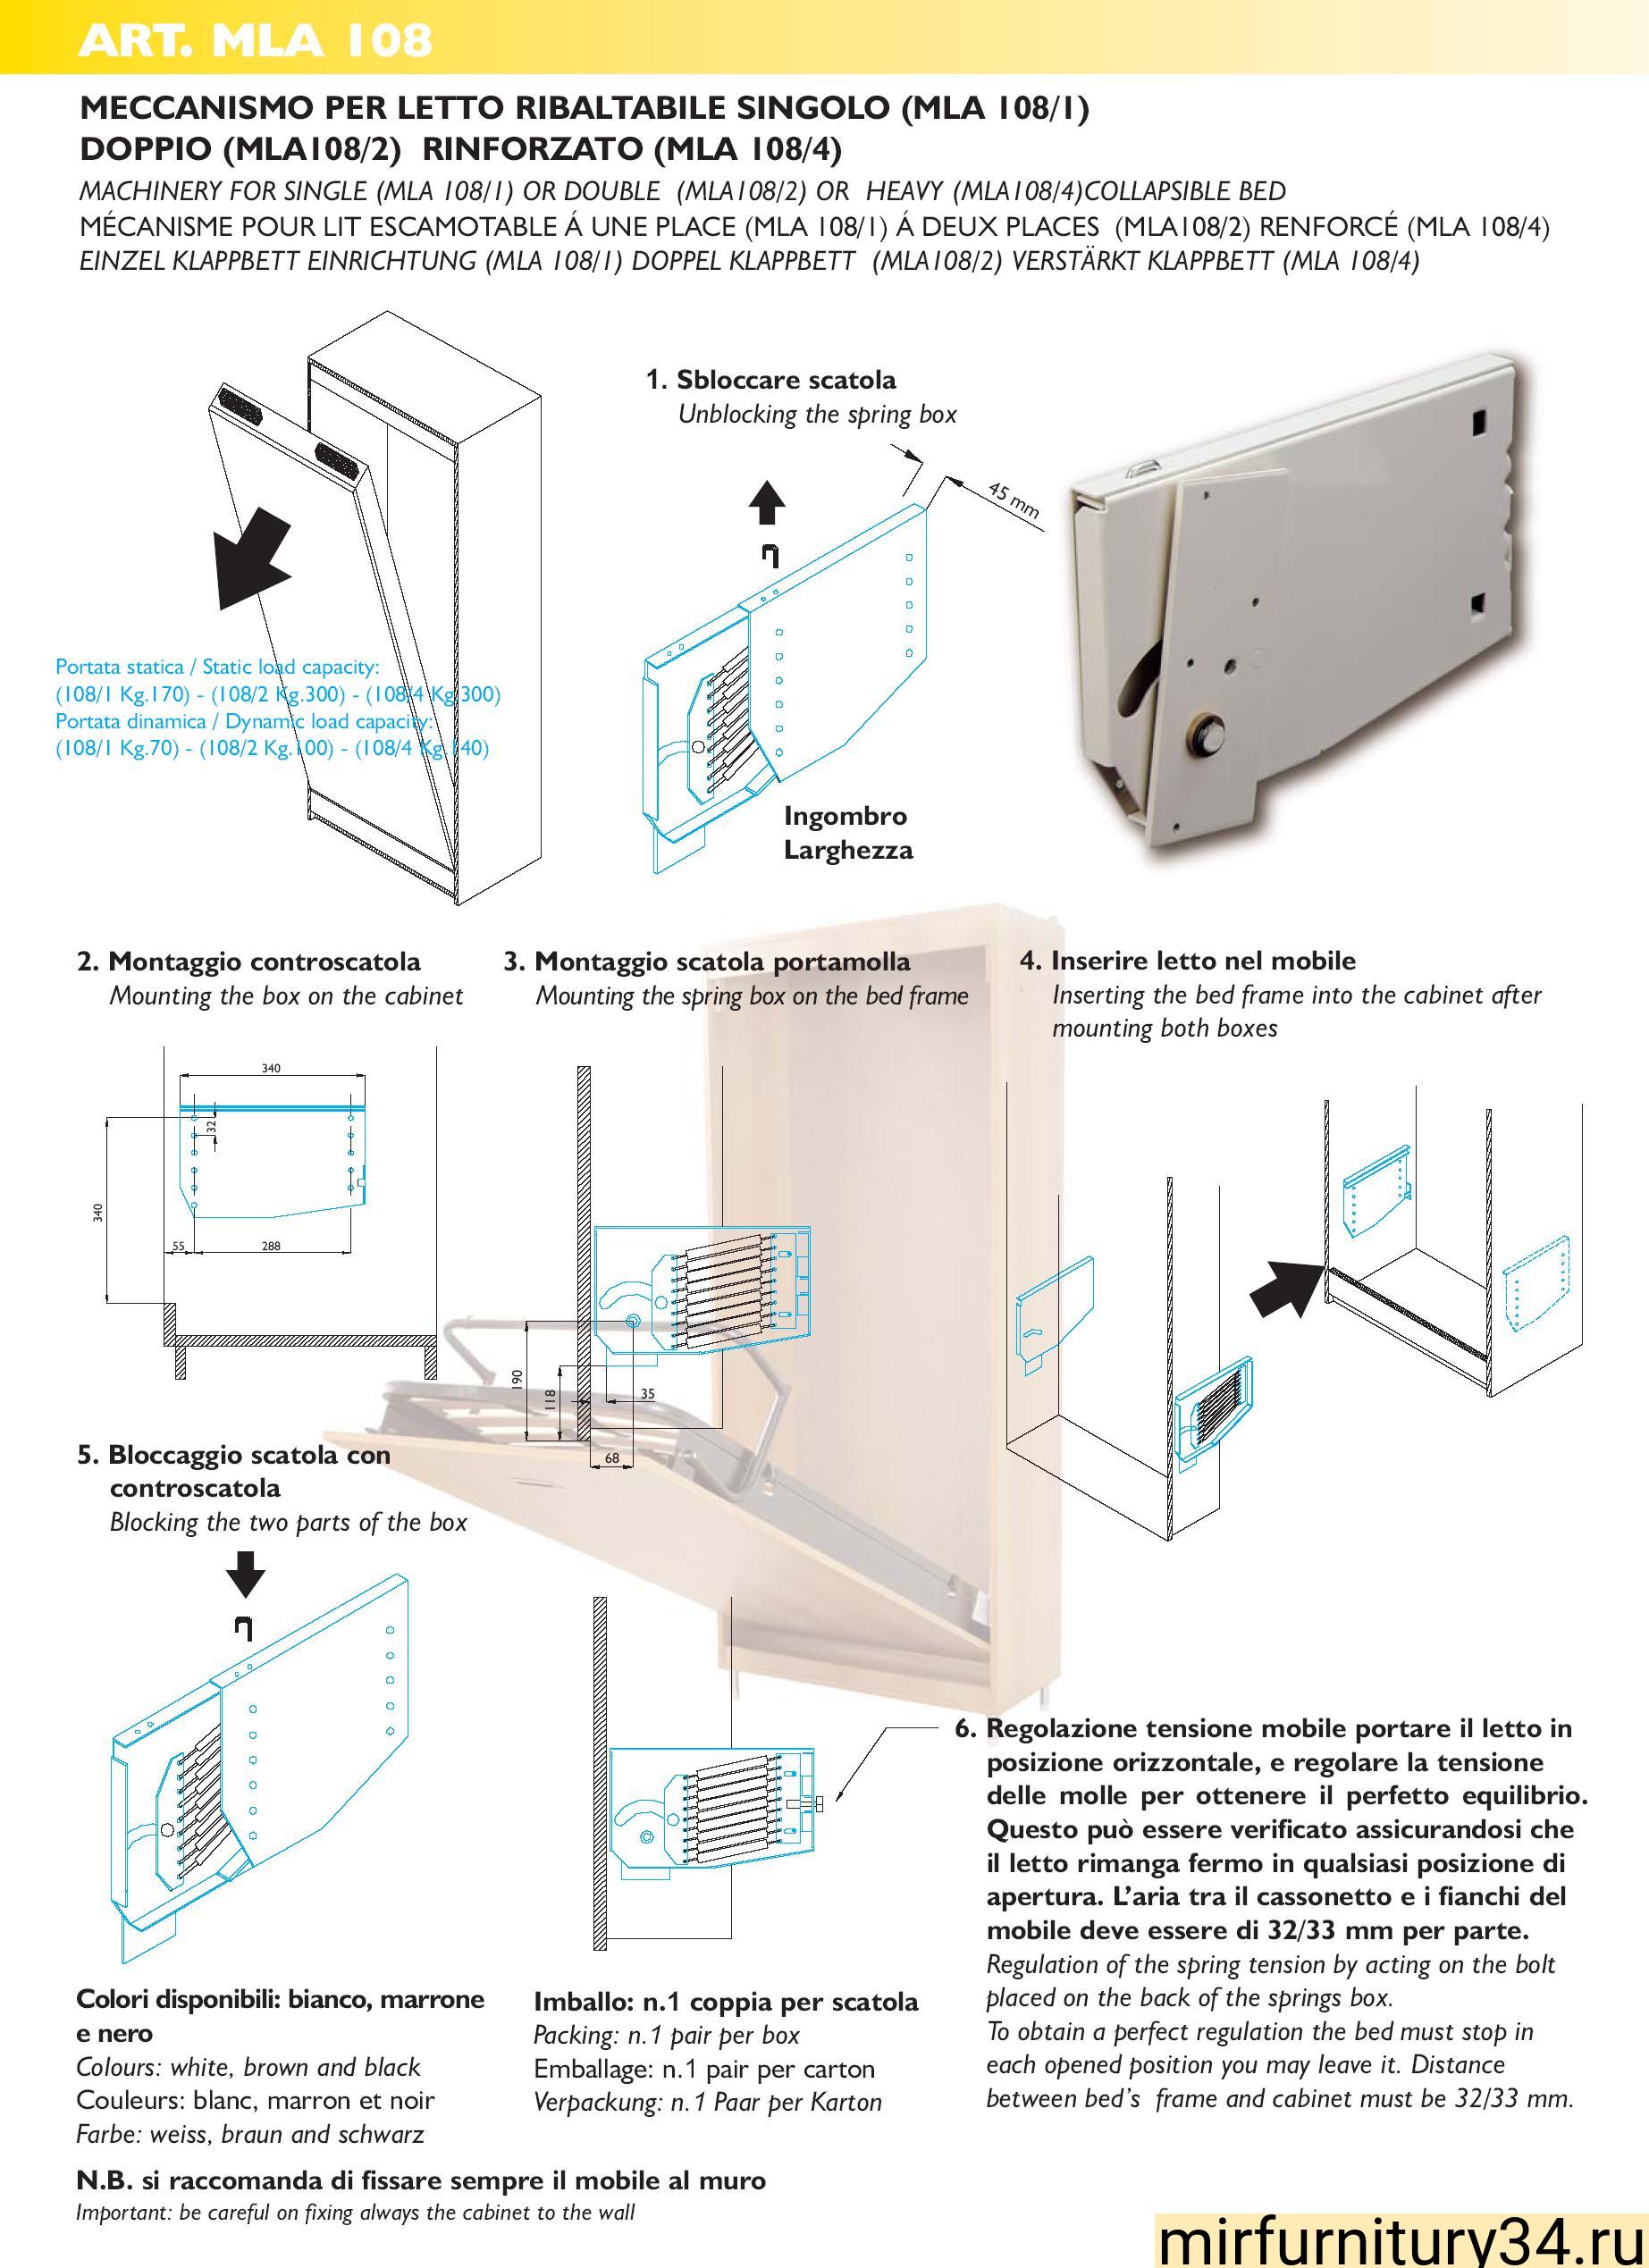 Механизм подъёма вертикальной кровати MLA-108